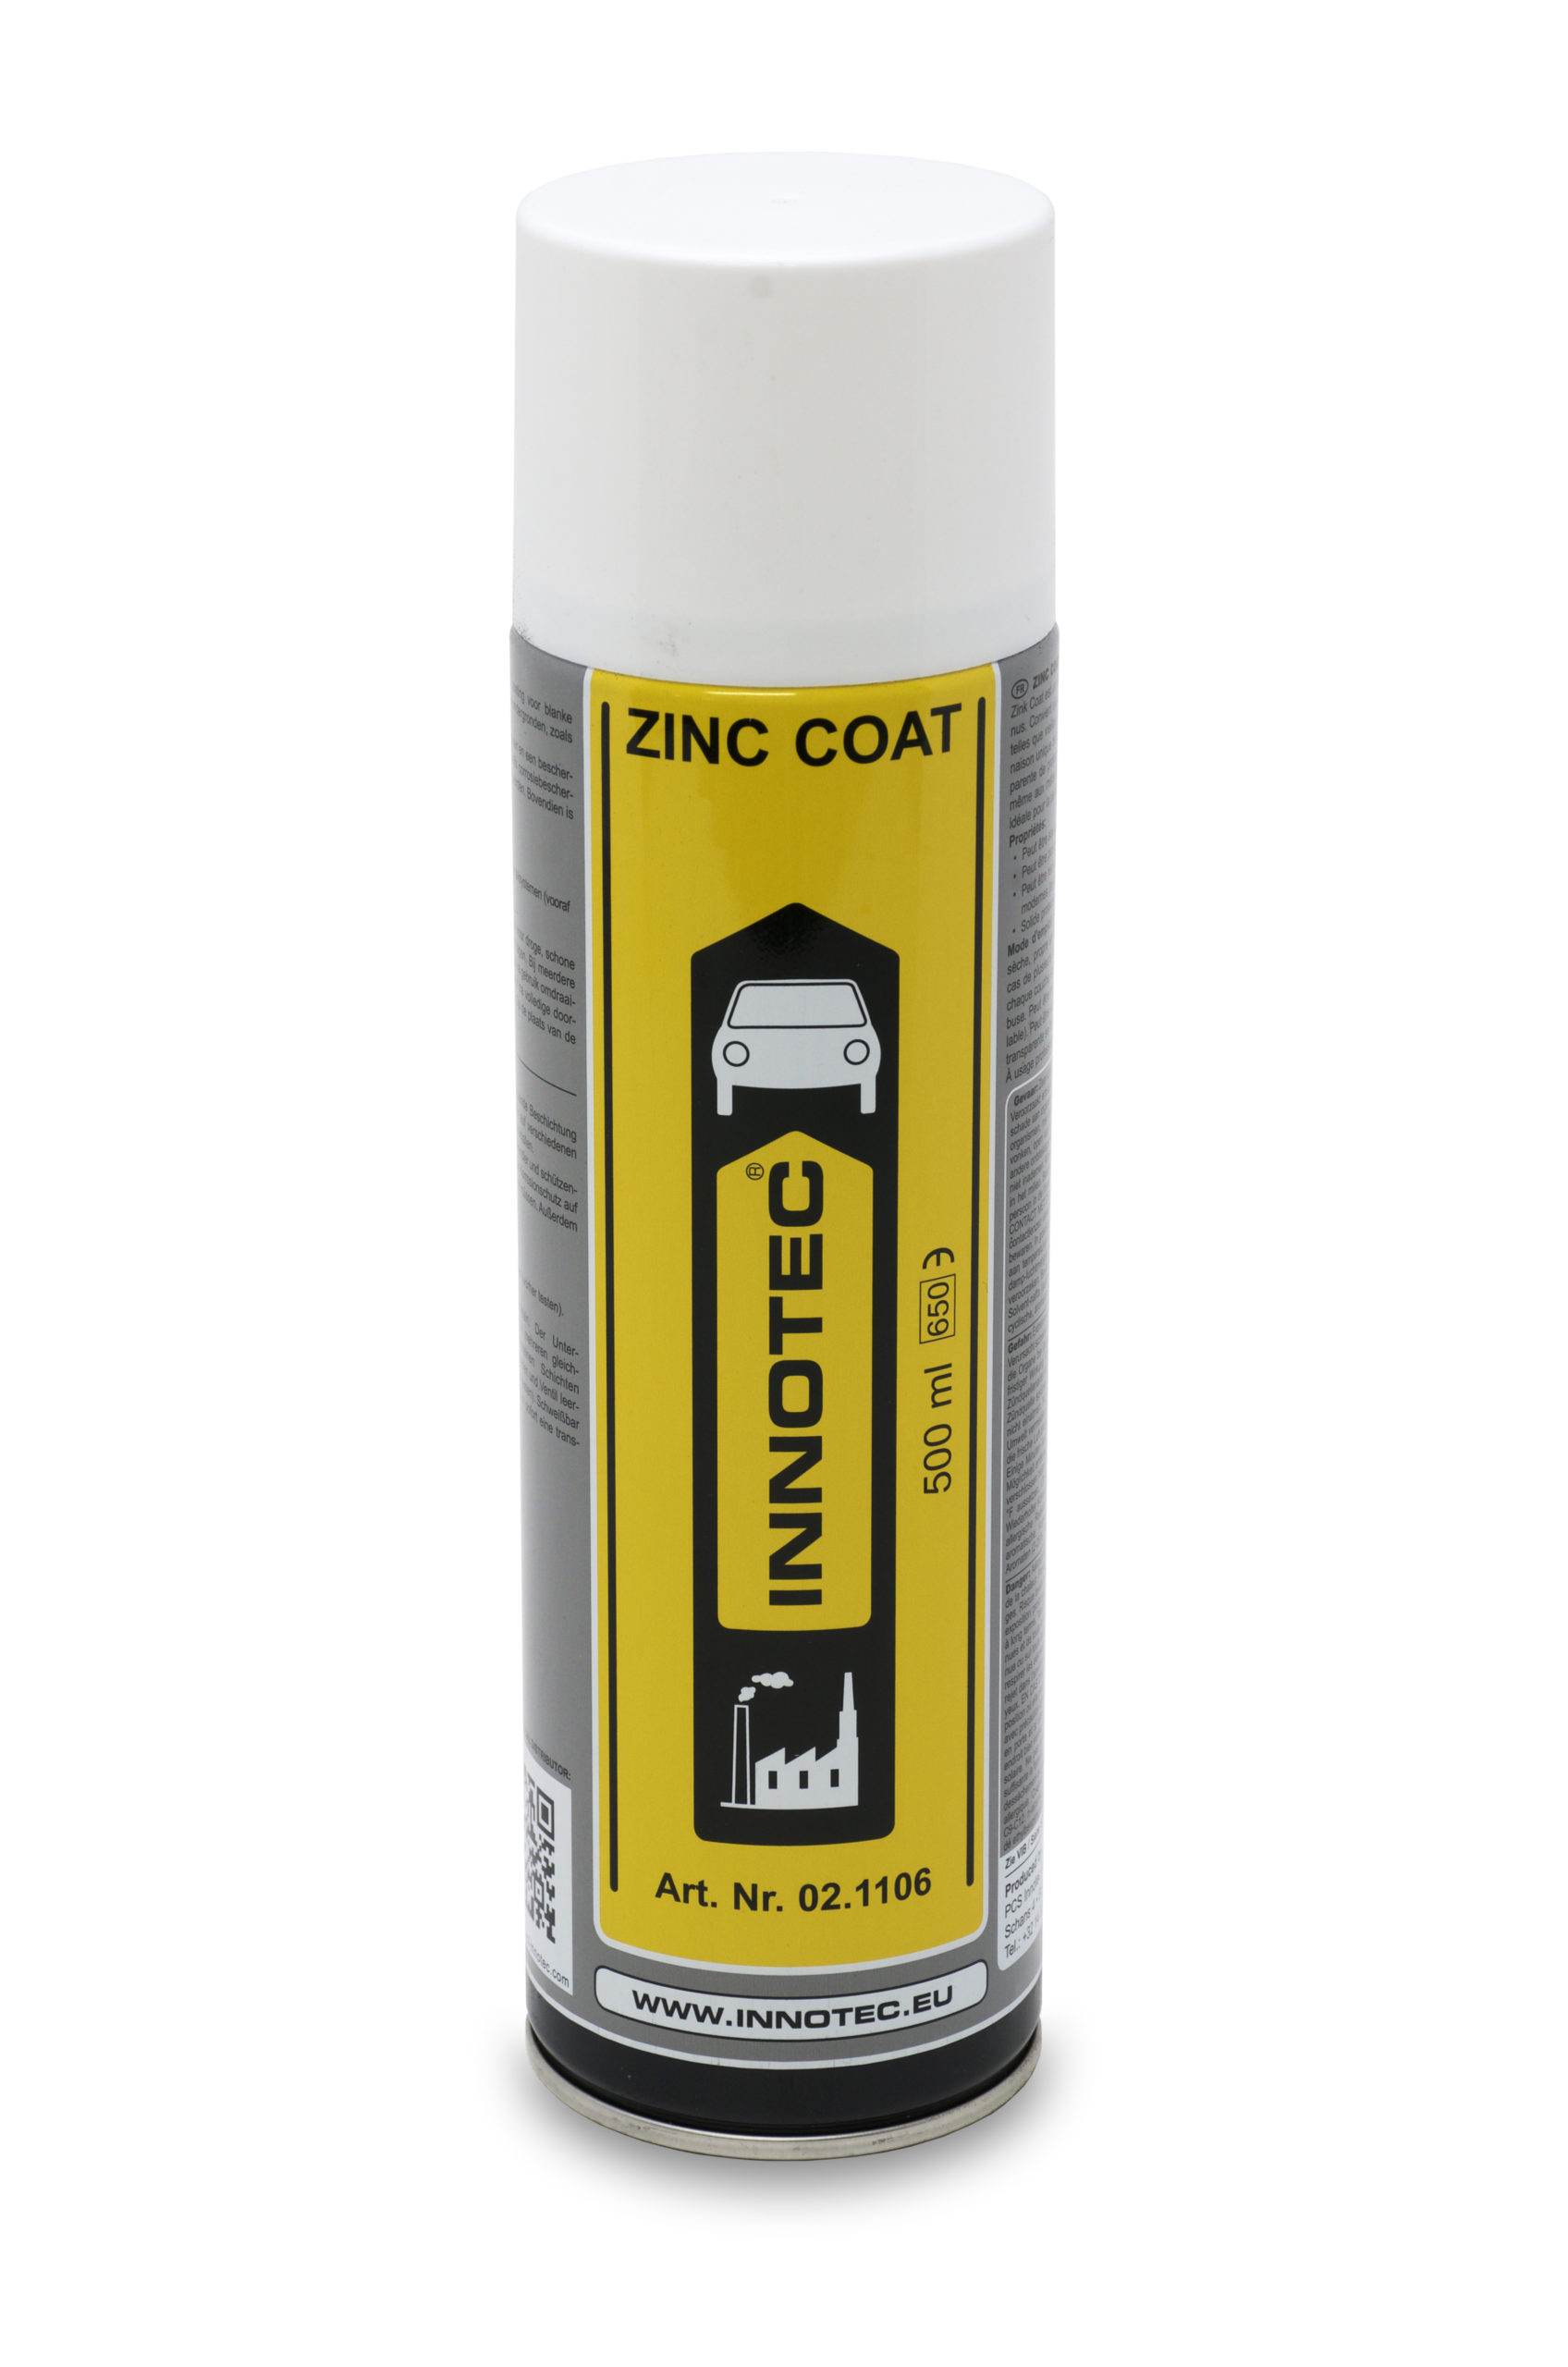 Zinc Coat